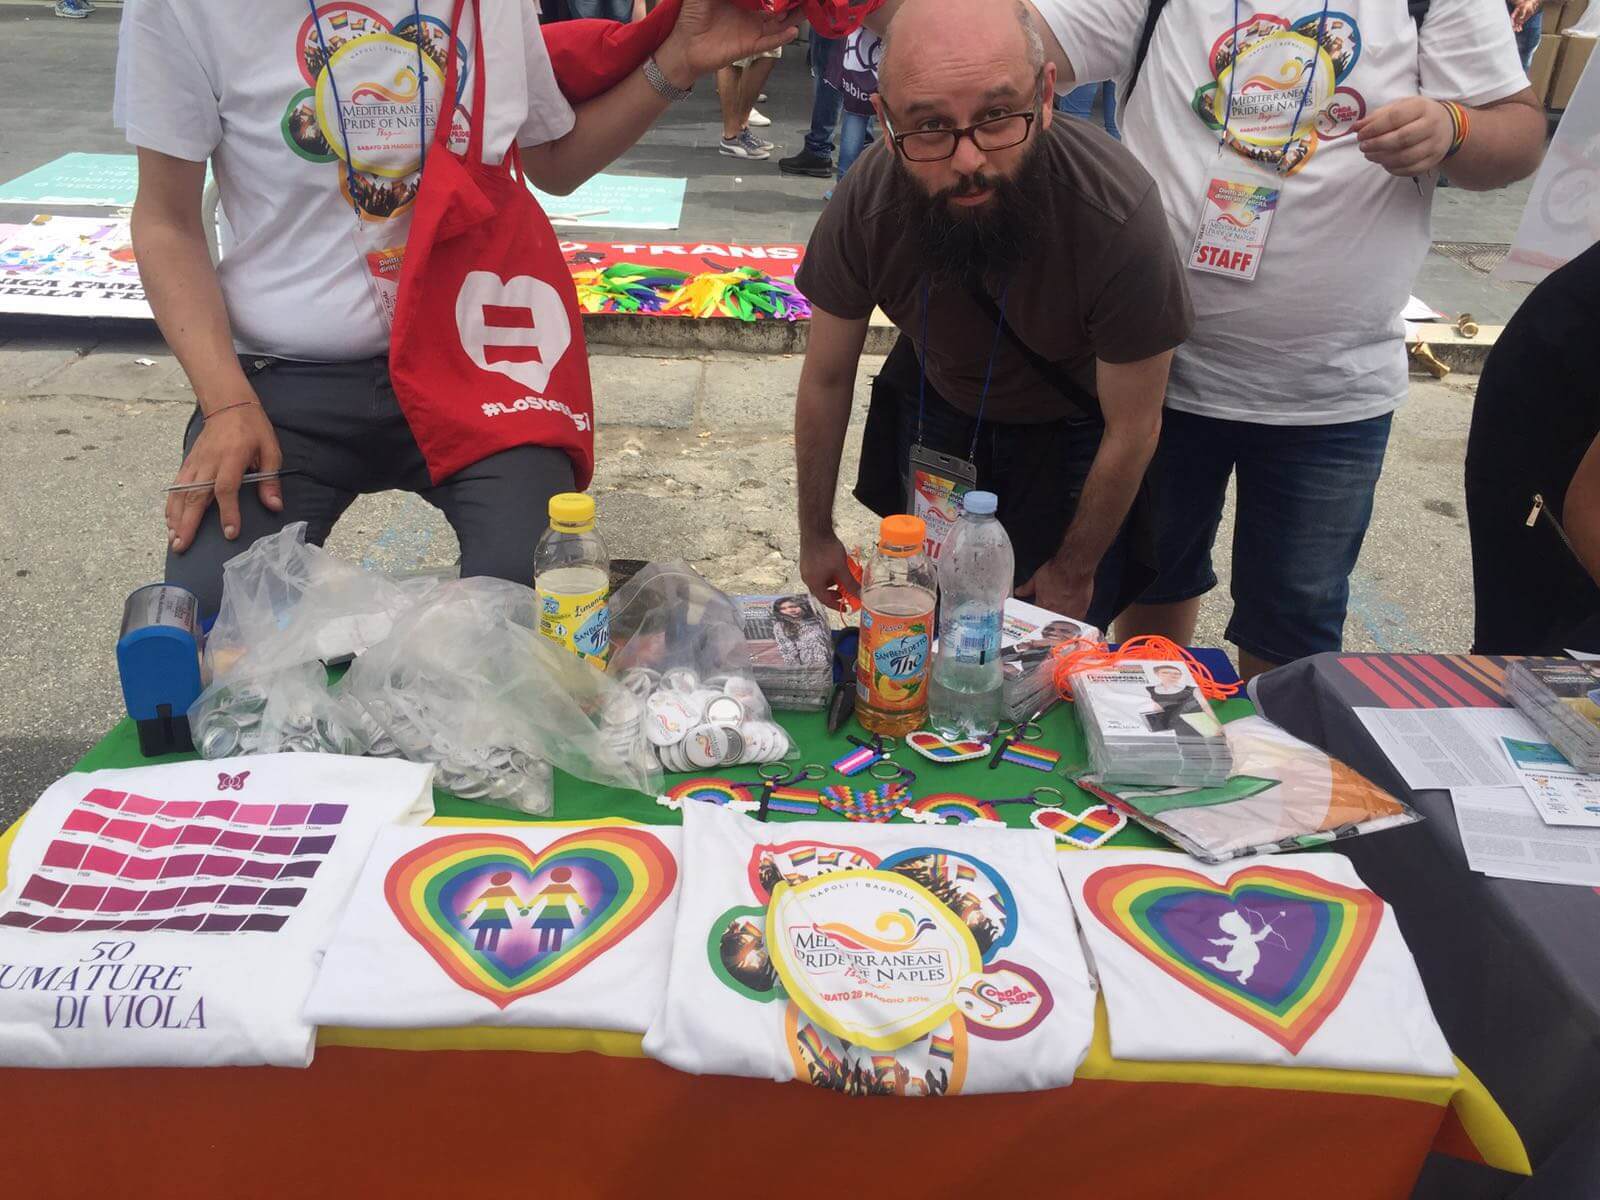 De Magistris in marcia al Pride di Napoli